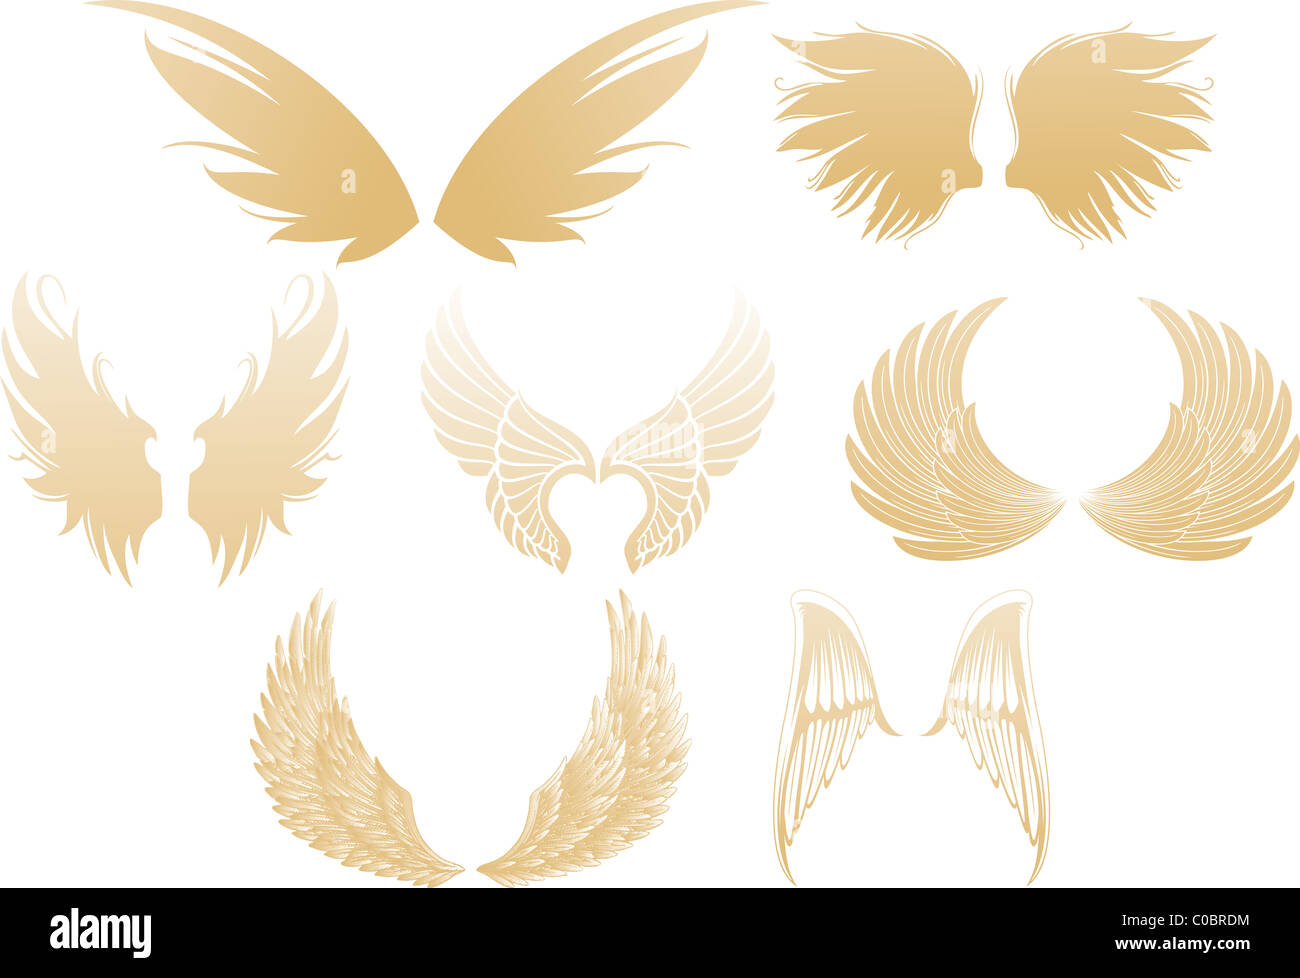 Conjunto de varias alas de angel resplandeciente de oro aislado sobre fondo blanco. Foto de stock